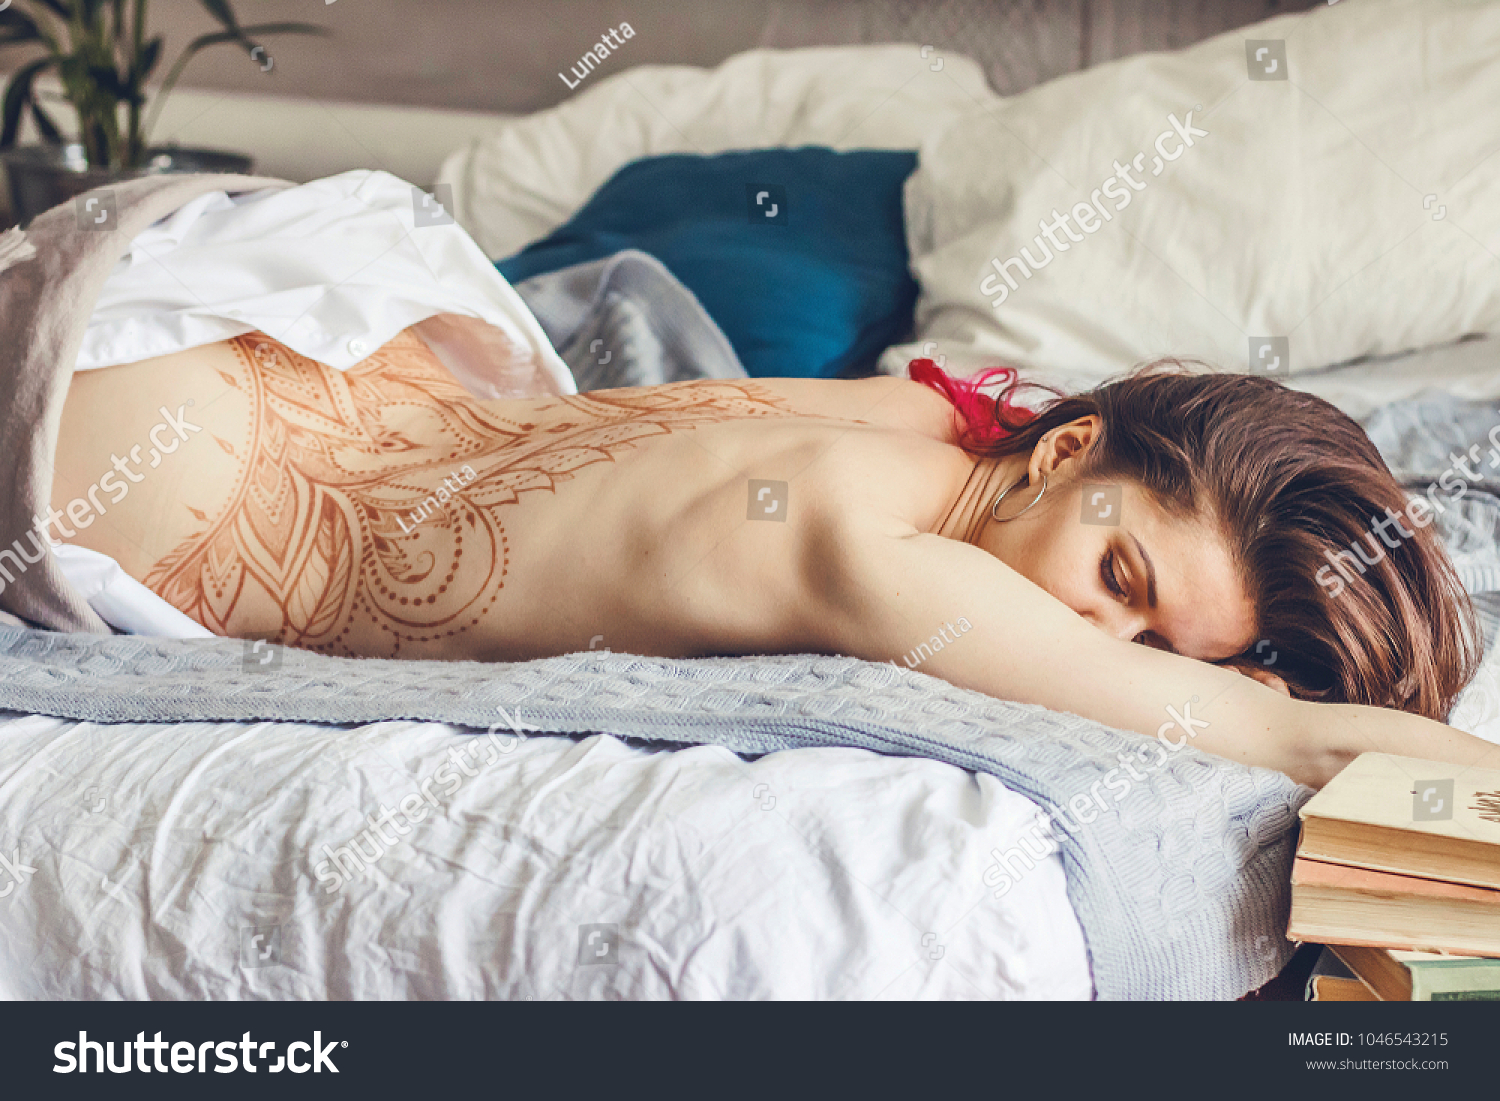 Nude Women Sleeping